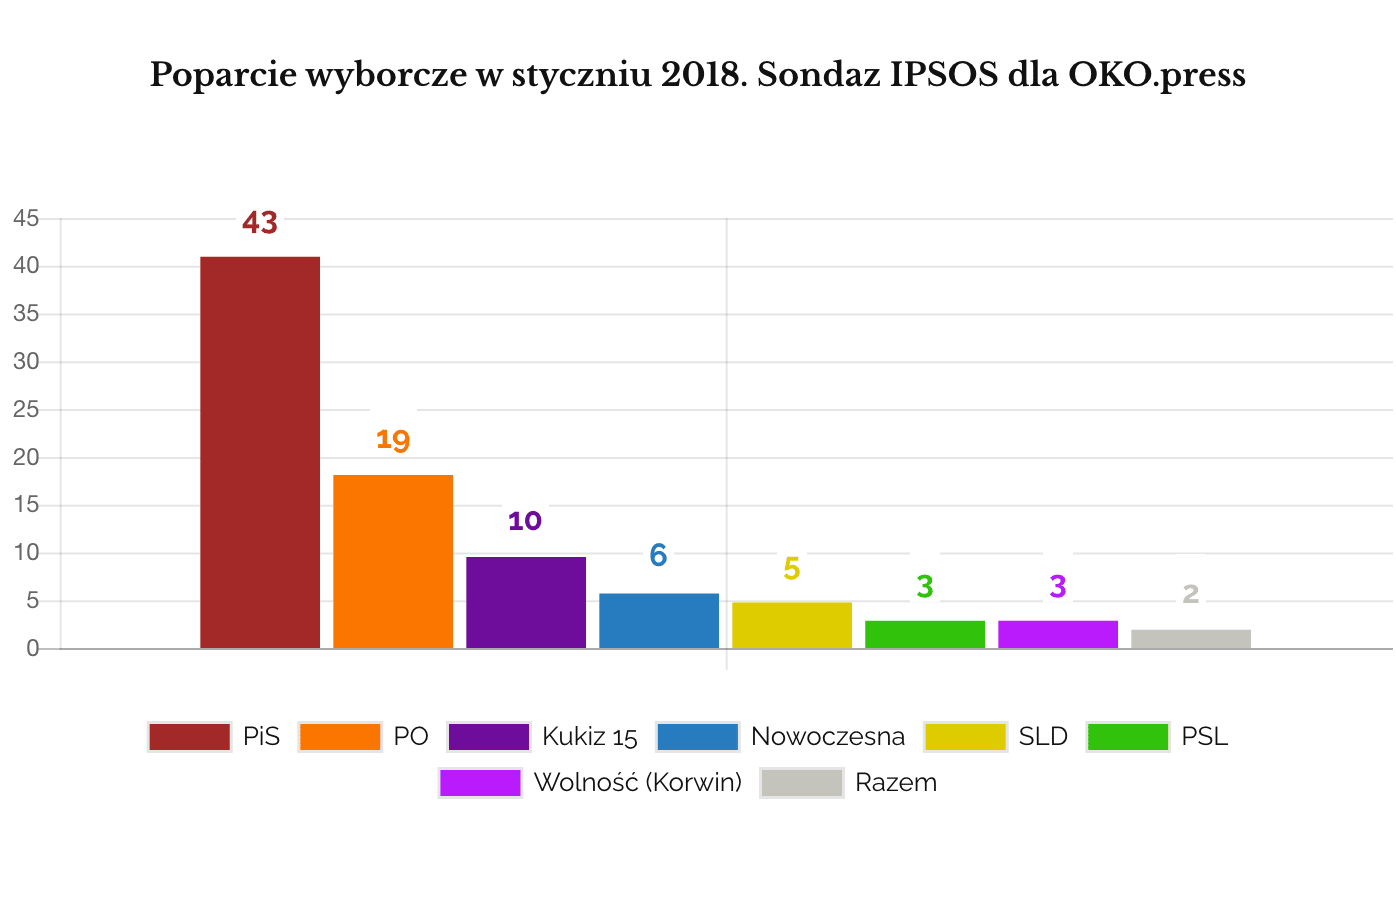 IPSOS styczeń 2018 sondaż partyjny klasyczny